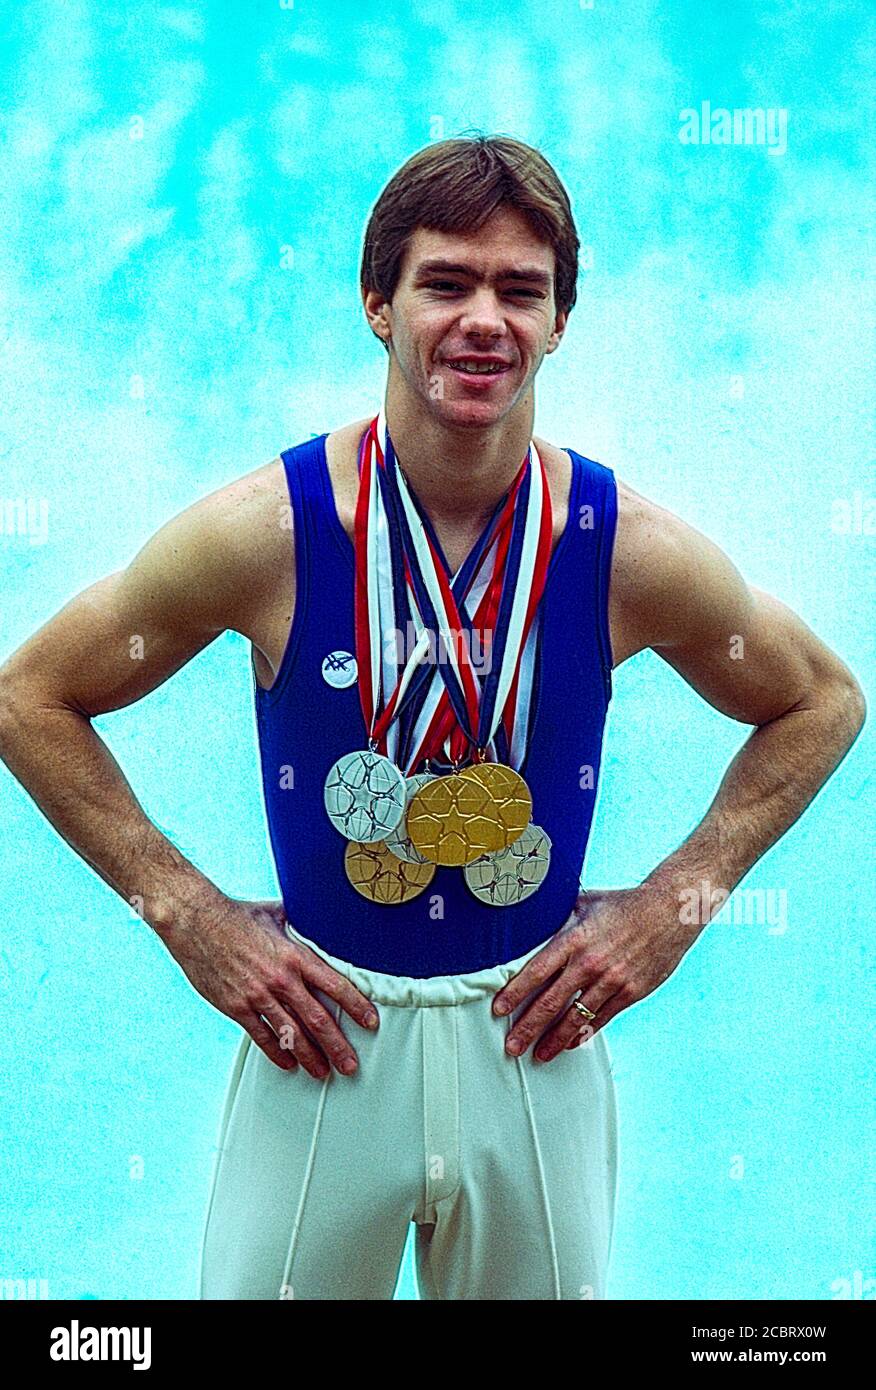 Kurt Thomas (USA) shows his medals won  at  the 1979 World Artistic Gymnastics Championships. Stock Photo